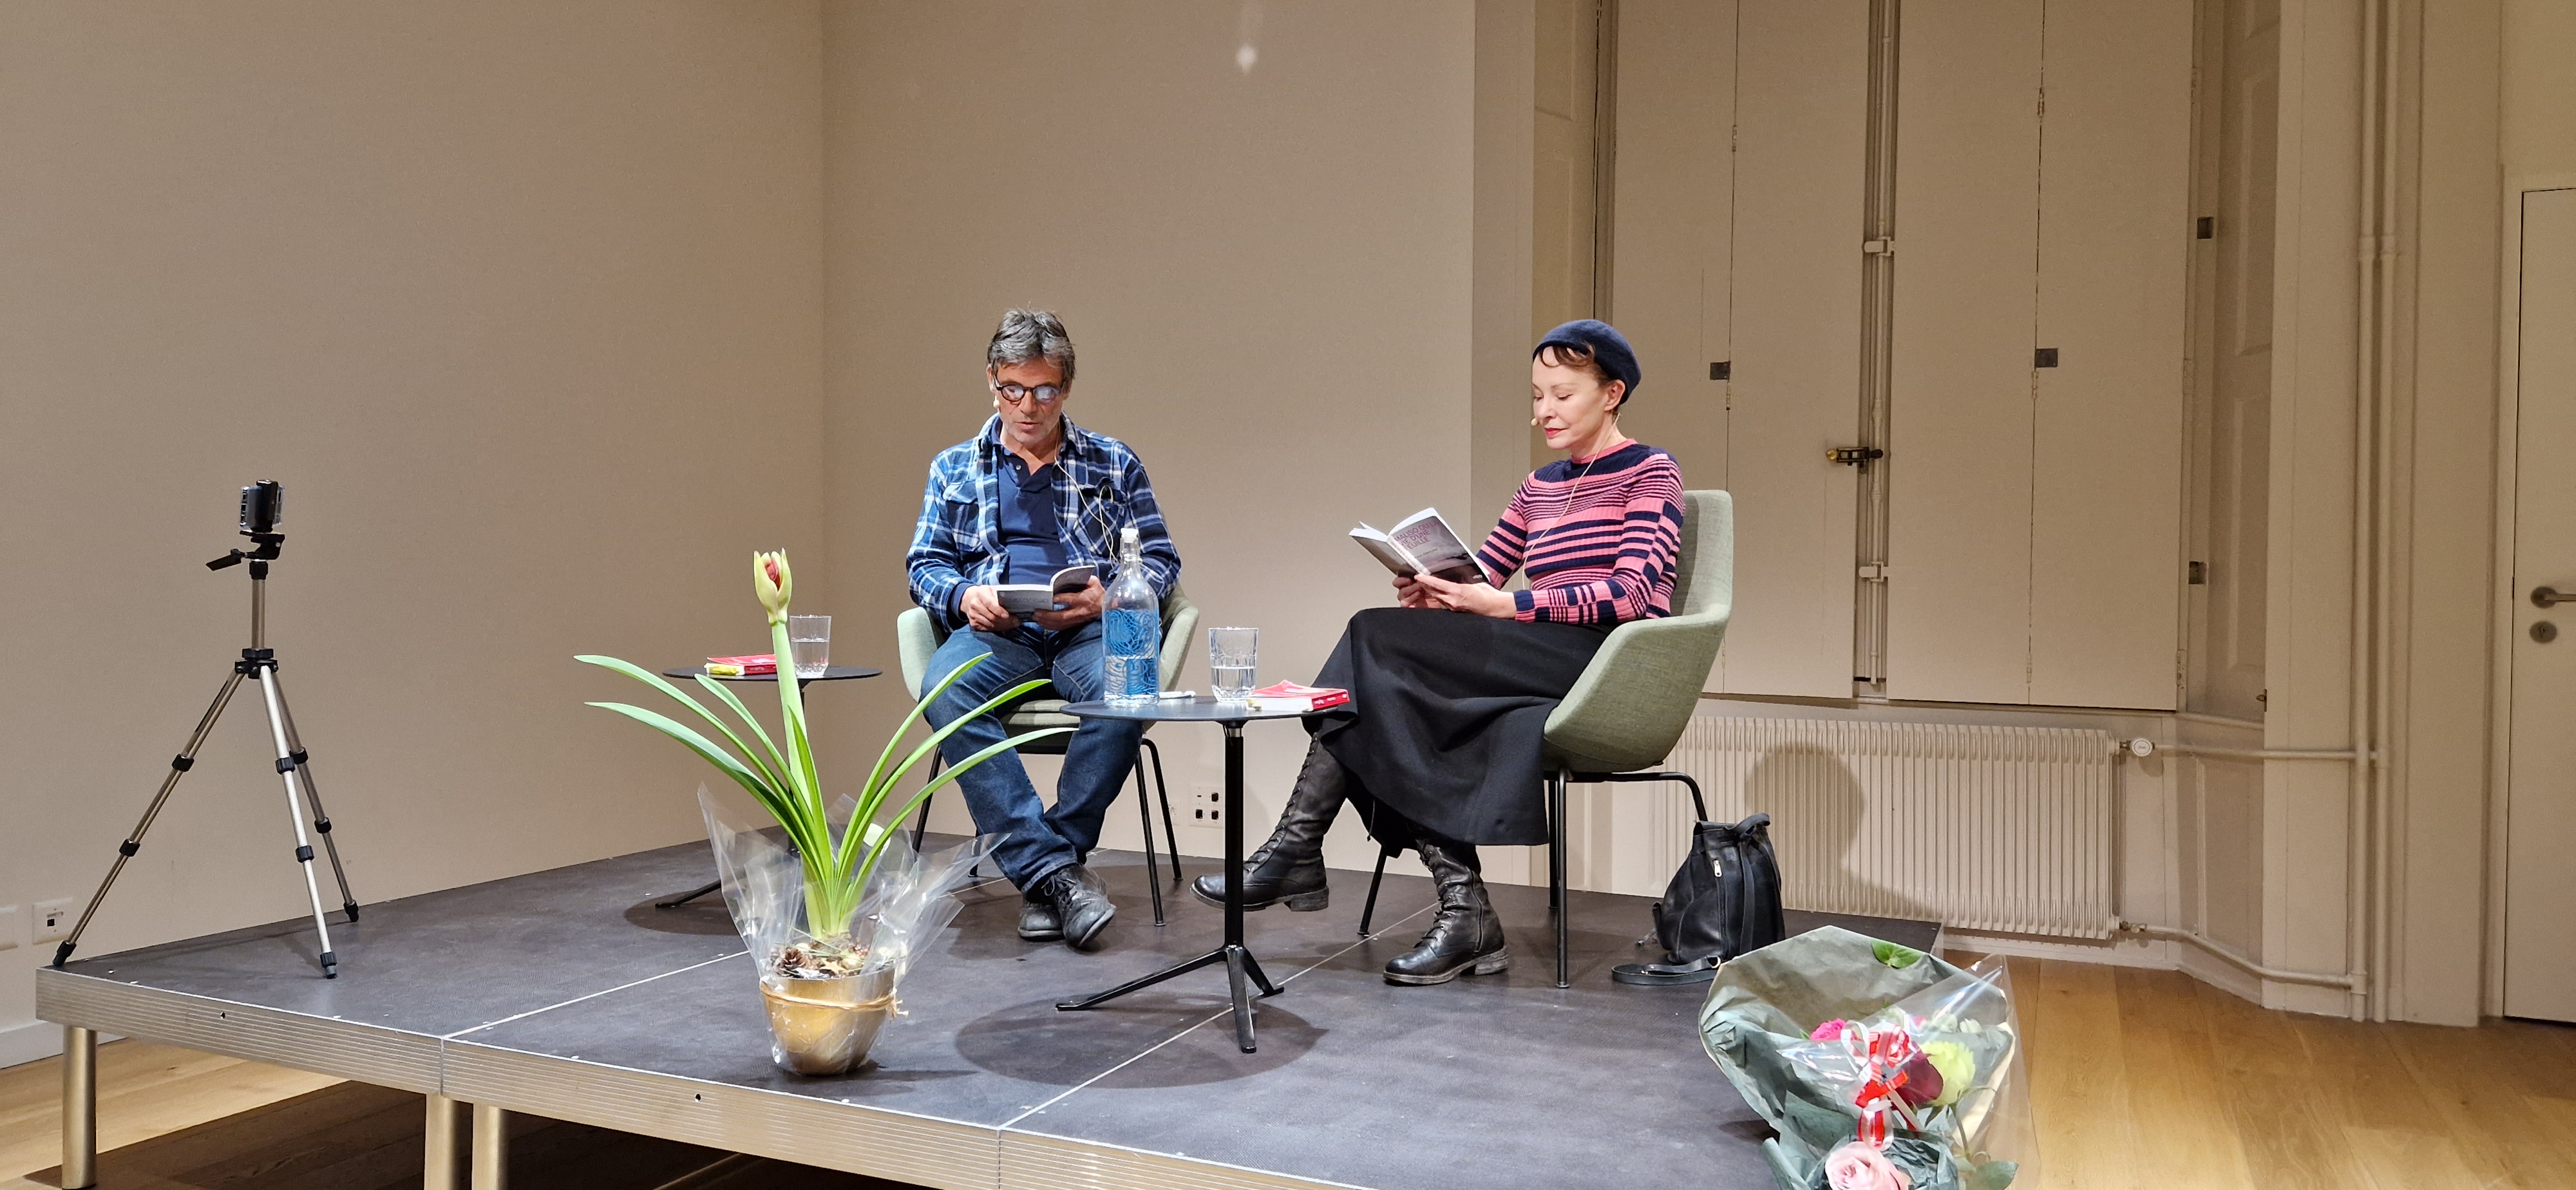 Patricia Bopp et Paul Oberson lisant leurs livres lors d'un vernissage à la maison Rousseau et Littérature de Genève